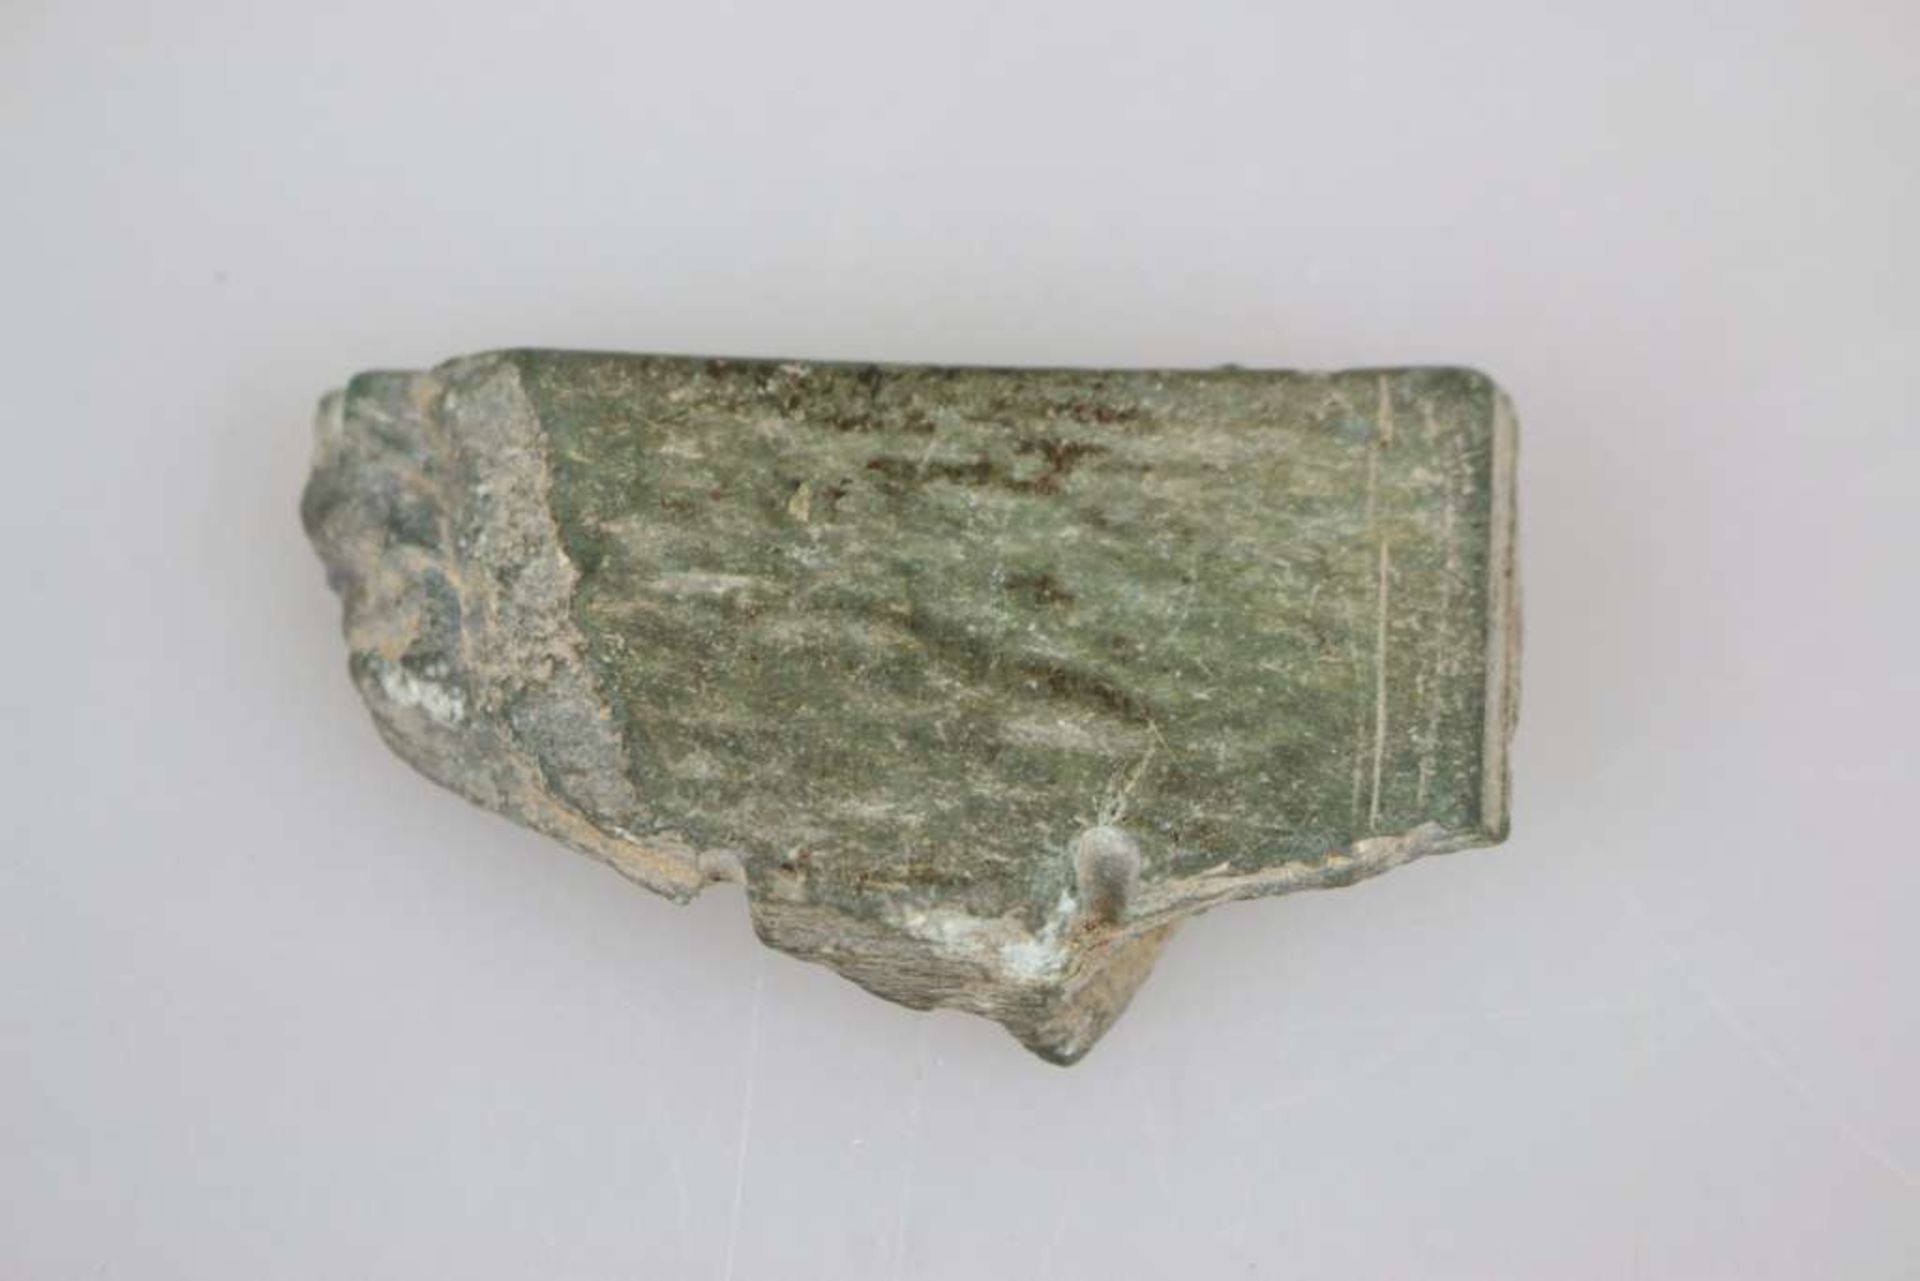 Schwarzes Steinfragment, Schiefer, vermutlich römische Epoche, ursprünglich an allen Flächen - Bild 2 aus 2